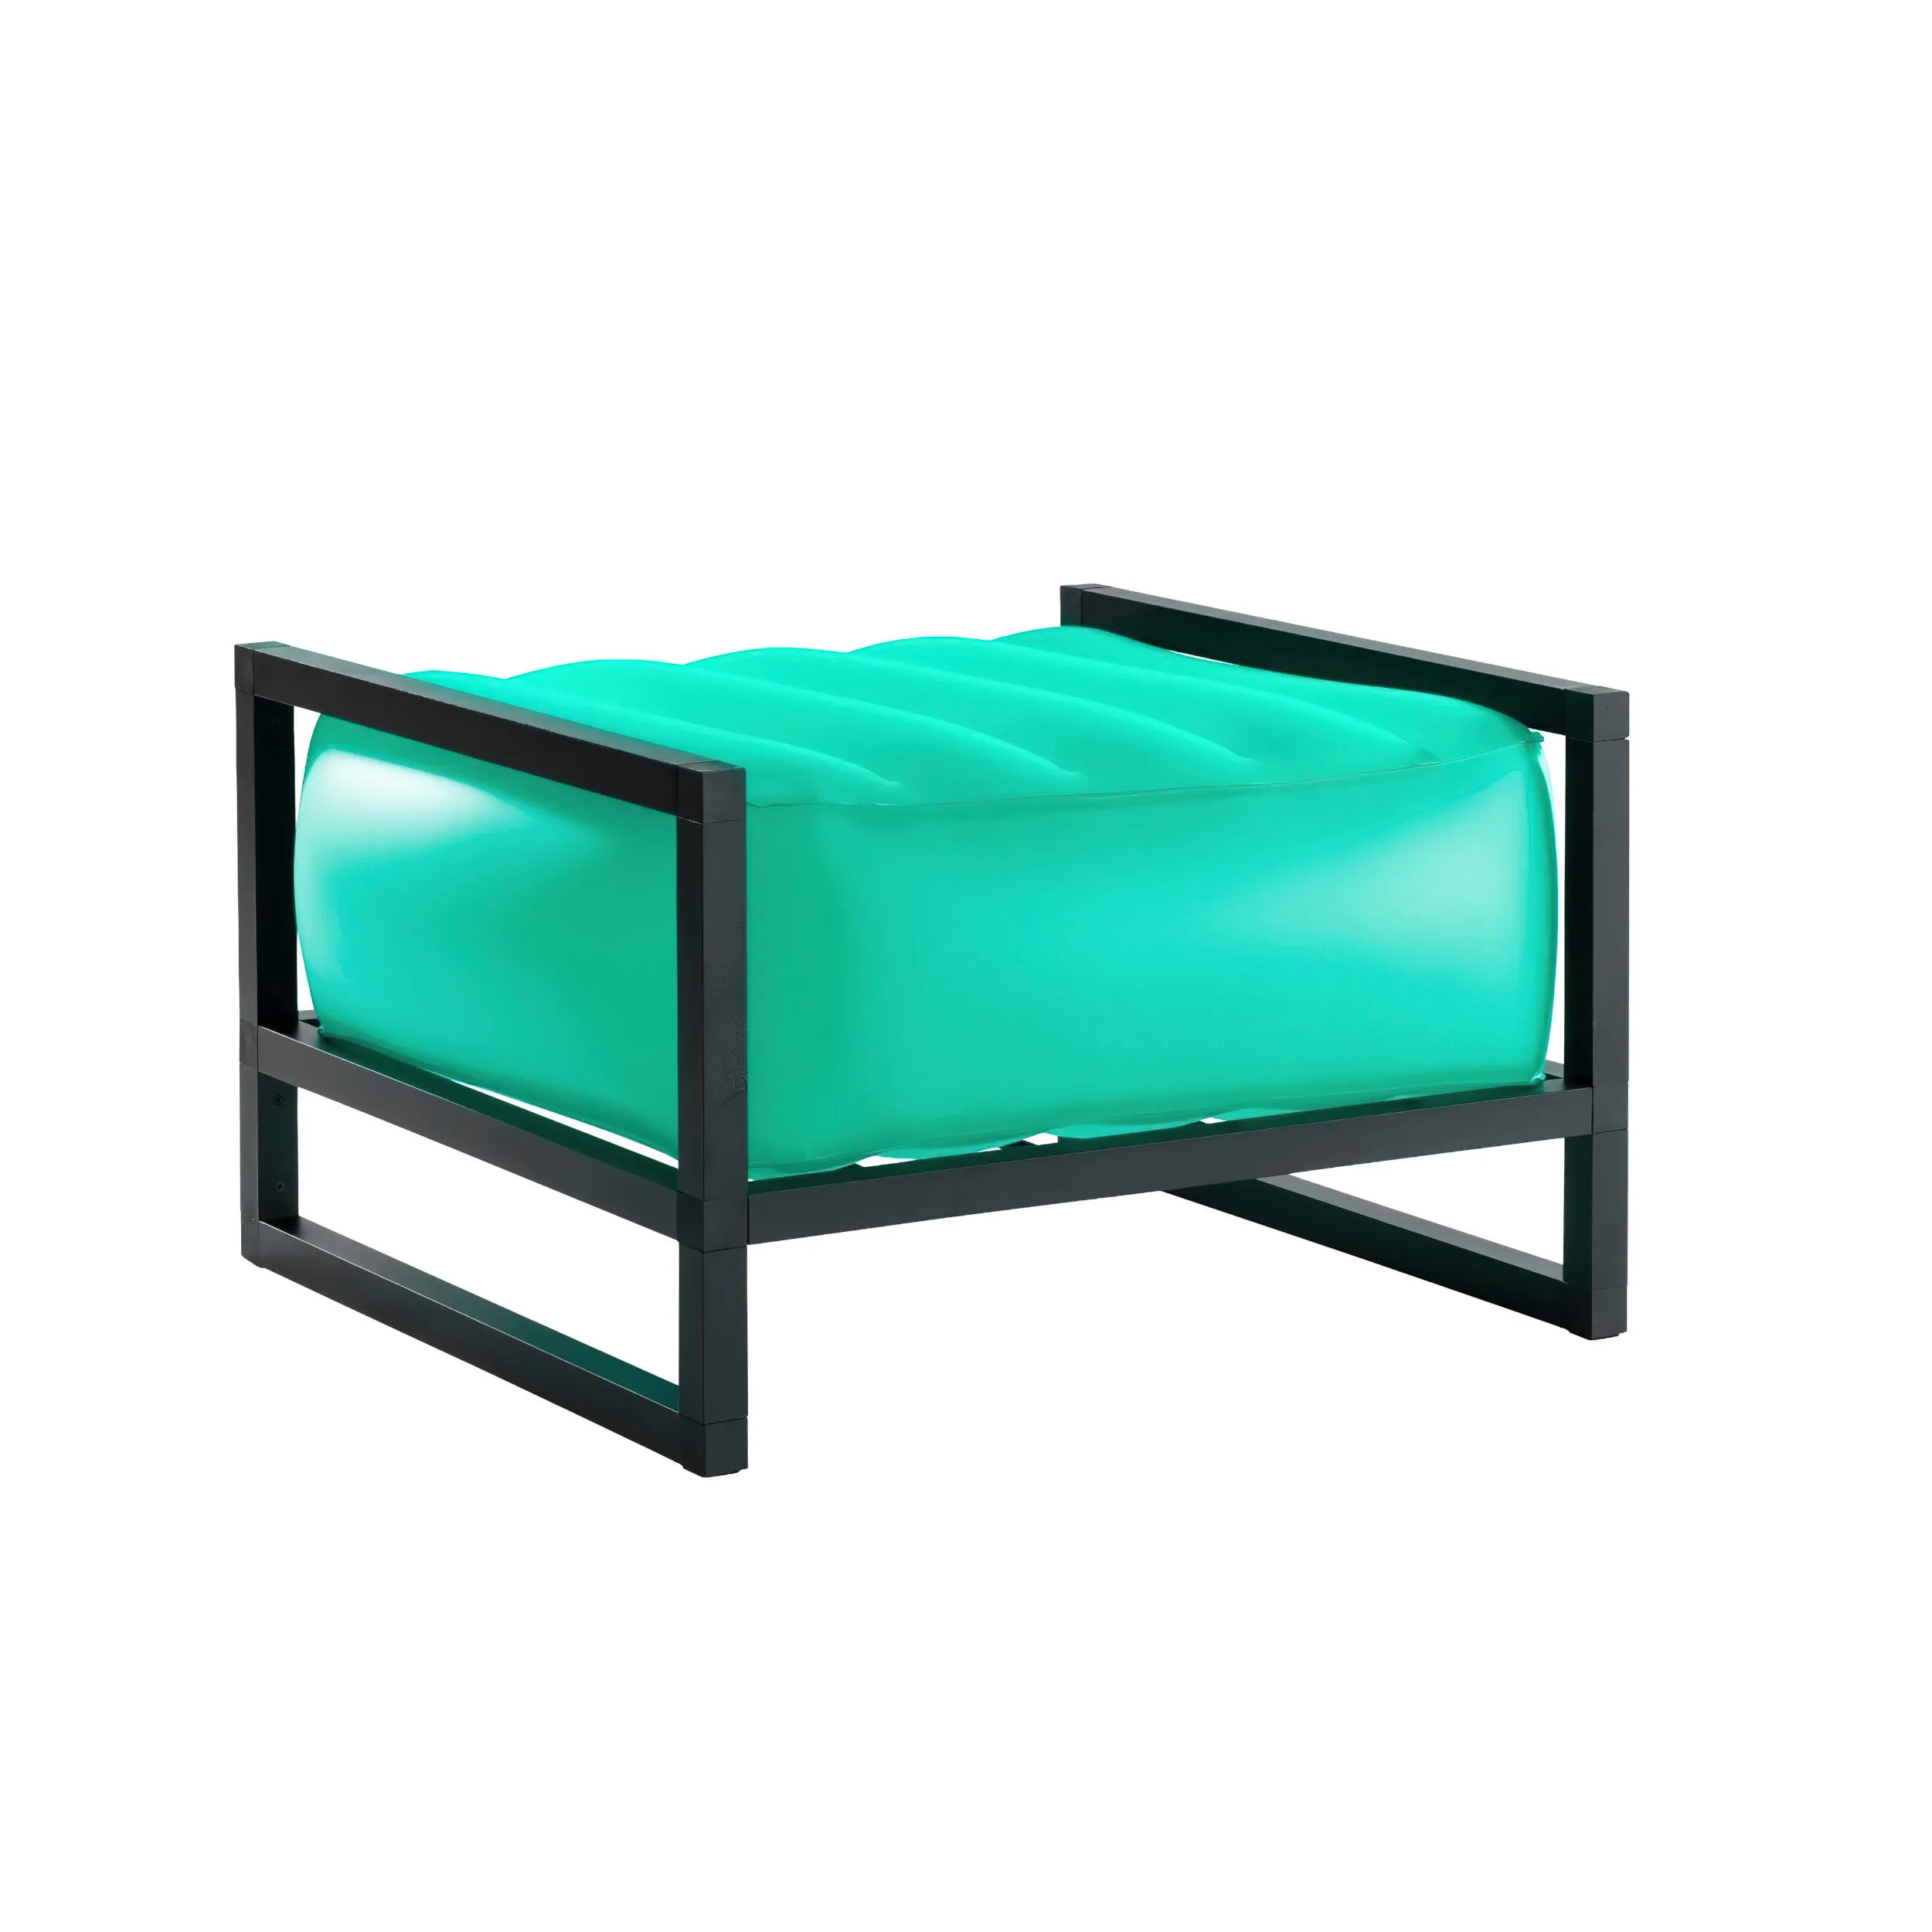 pouf Yomi eko illuminato struttura in alluminio, dimensioni 62x70xH40 cm peso 7,1 kg, seduta gonfiabile in TPU colore verde traslucido